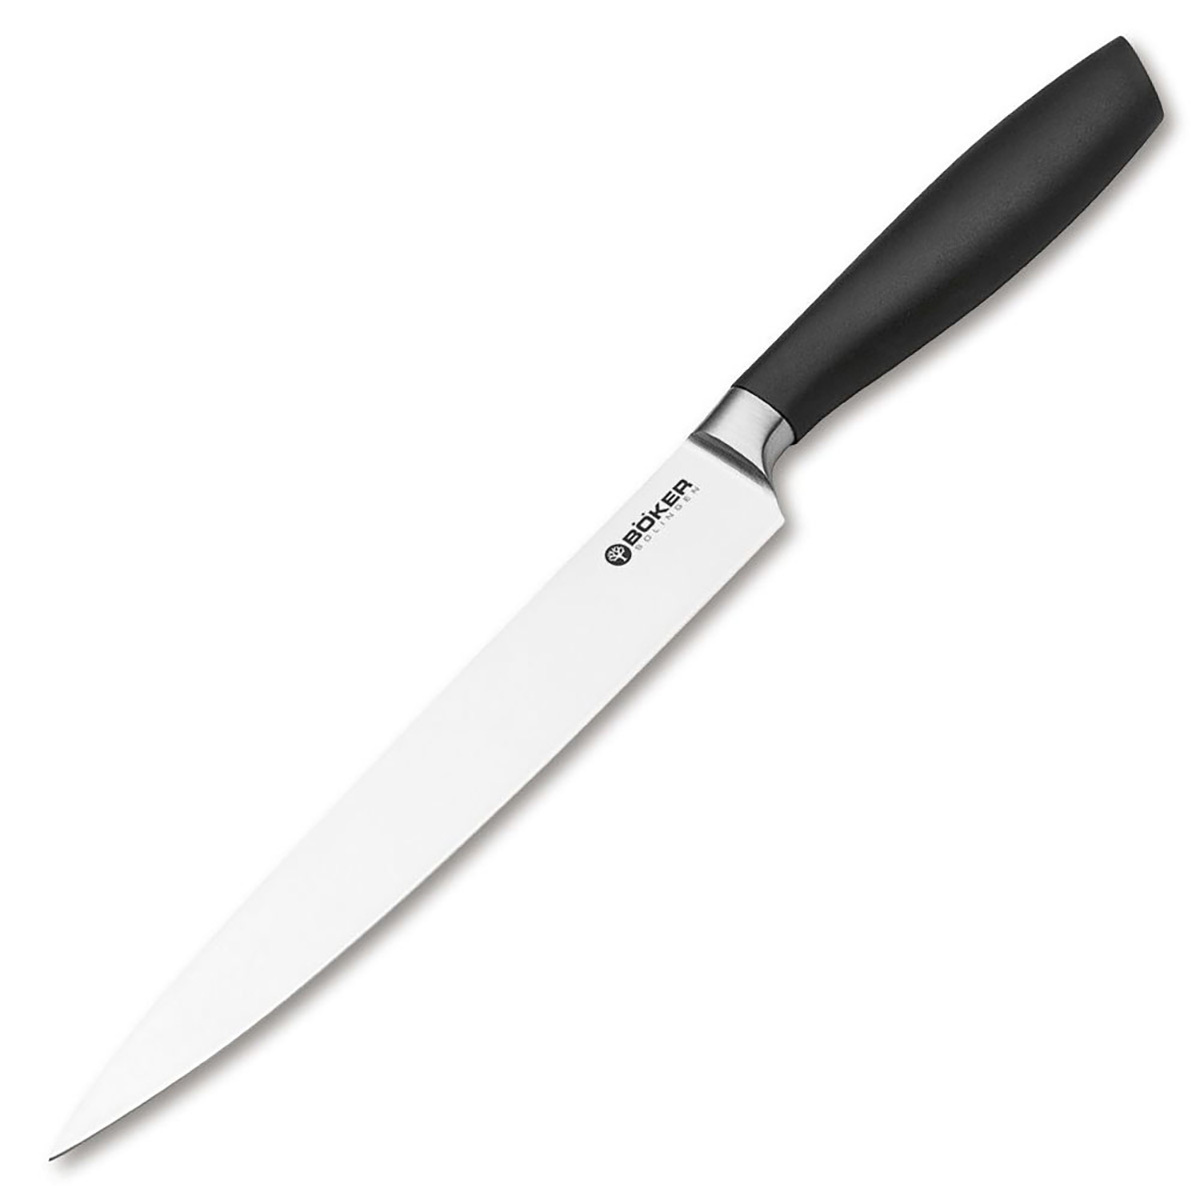 Кухонный нож Boker Core Professional Carving Knife, сталь 1.4116, рукоять пластик